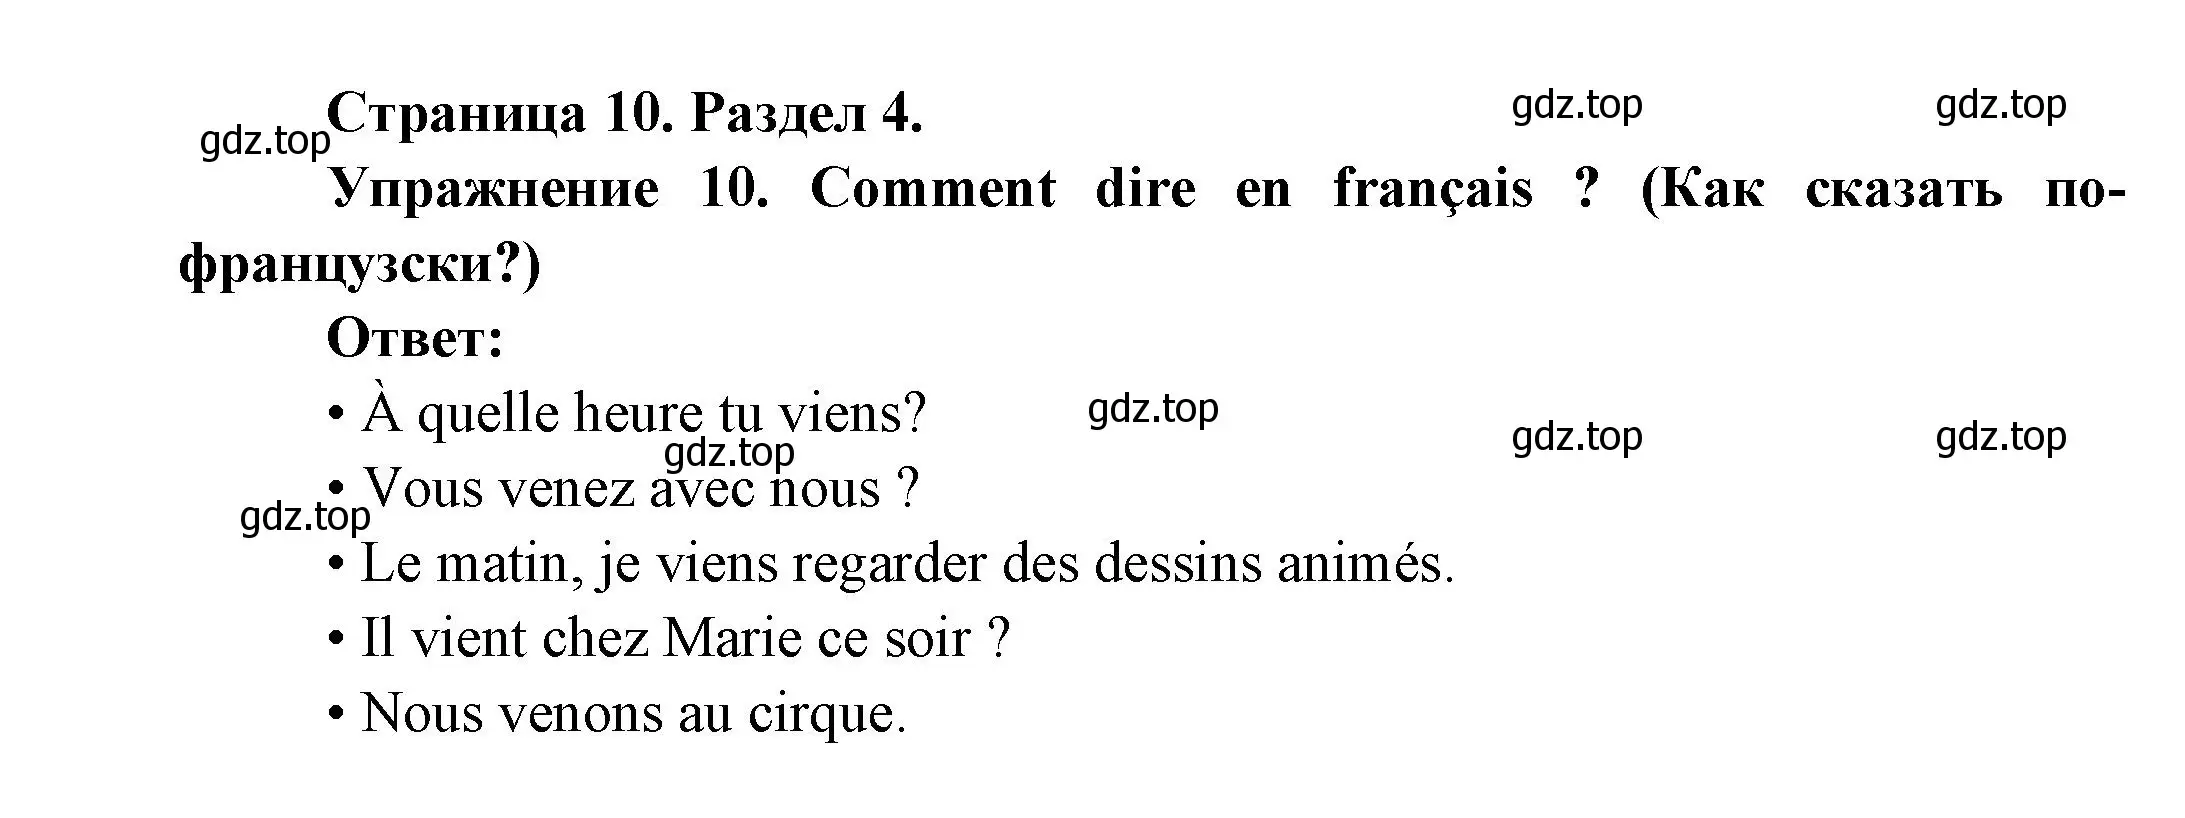 Решение номер 10 (страница 10) гдз по французскому языку 5 класс Береговская, Белосельская, учебник 2 часть